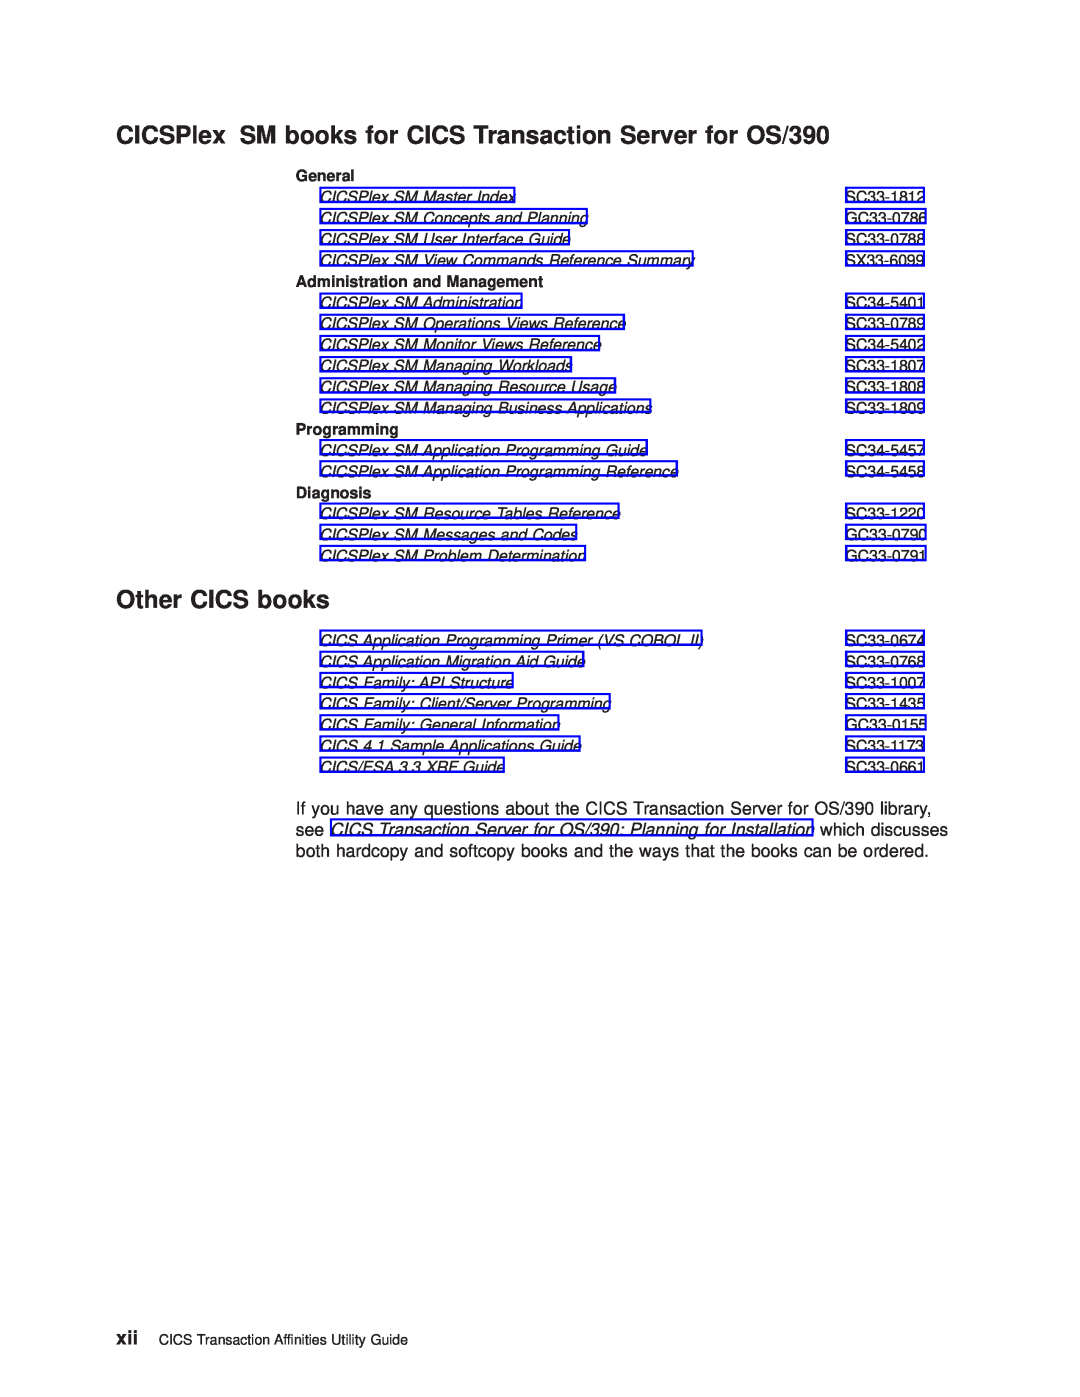 IBM CICSPlex SM books for CICS Transaction Server for OS/390, Other CICS books, CICSPlex SM Master Index, SX33-6099 